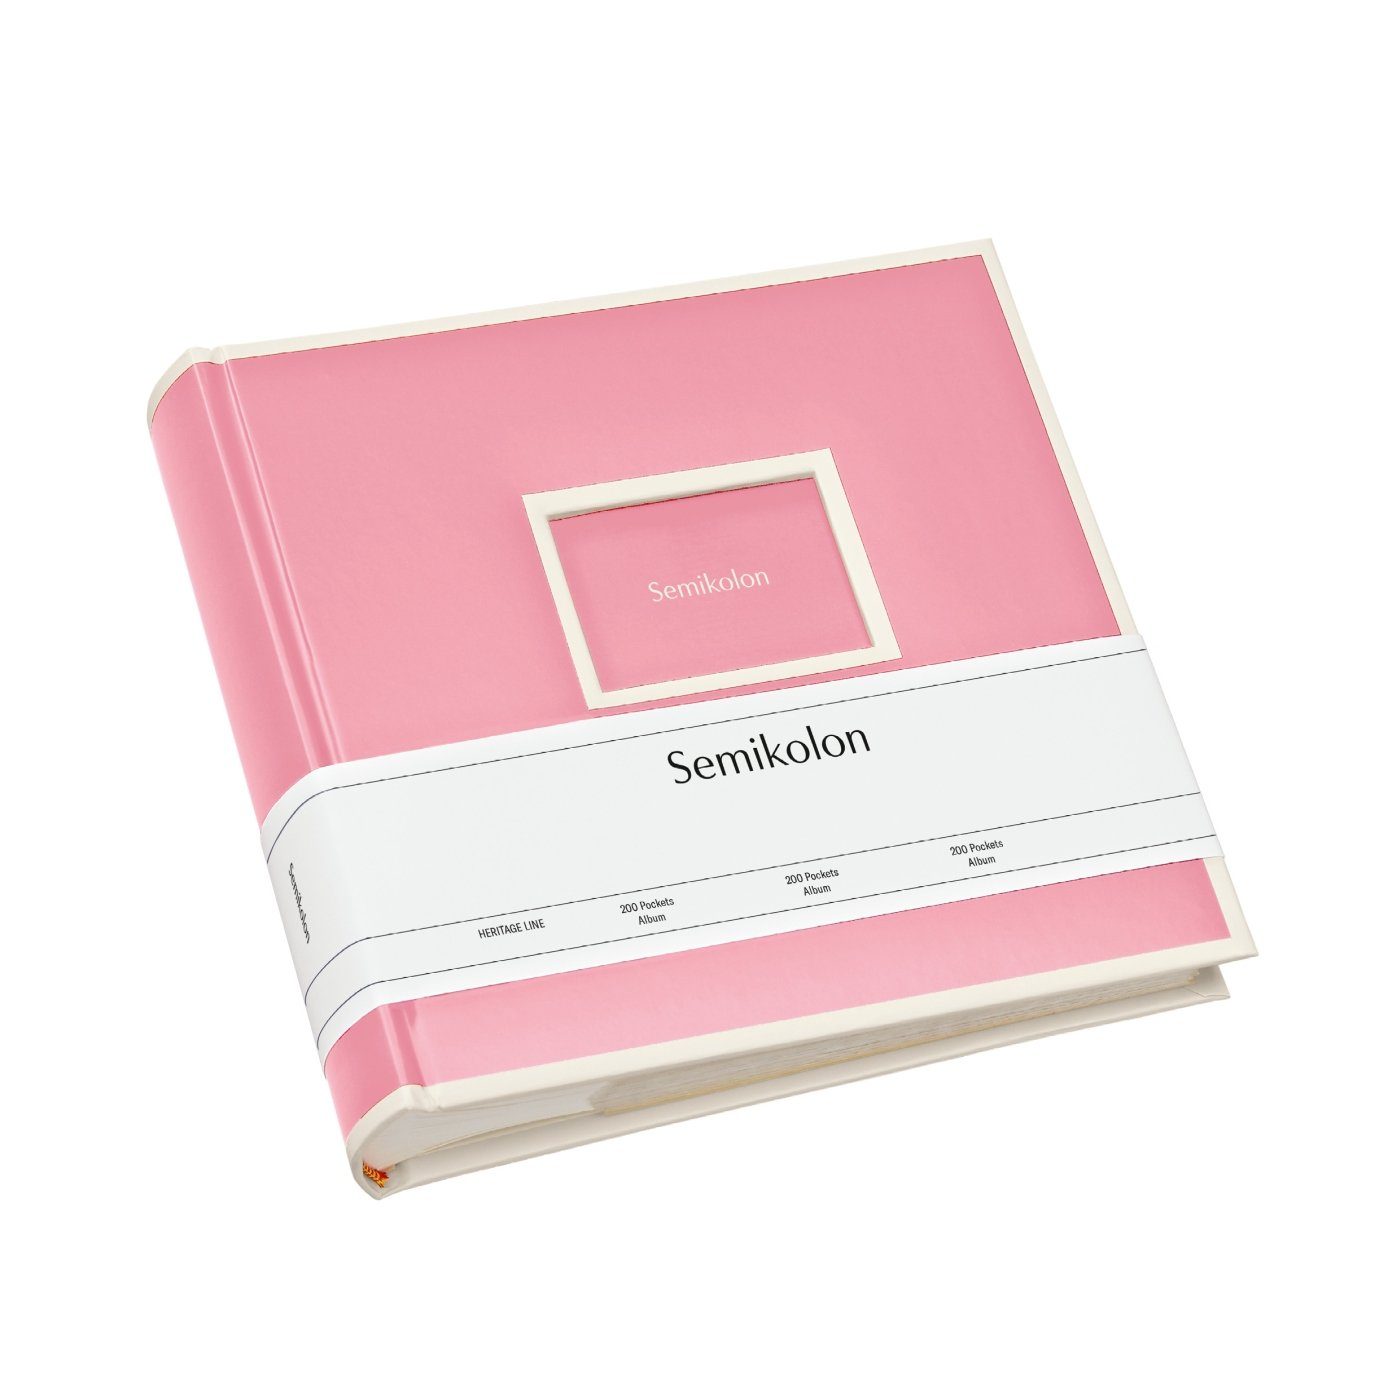 Semikolon Fotoalbum Für 200 Fotos mit dem Format 10 x 15, 100 Seiten mit je 2 Einschubtaschen flamingo